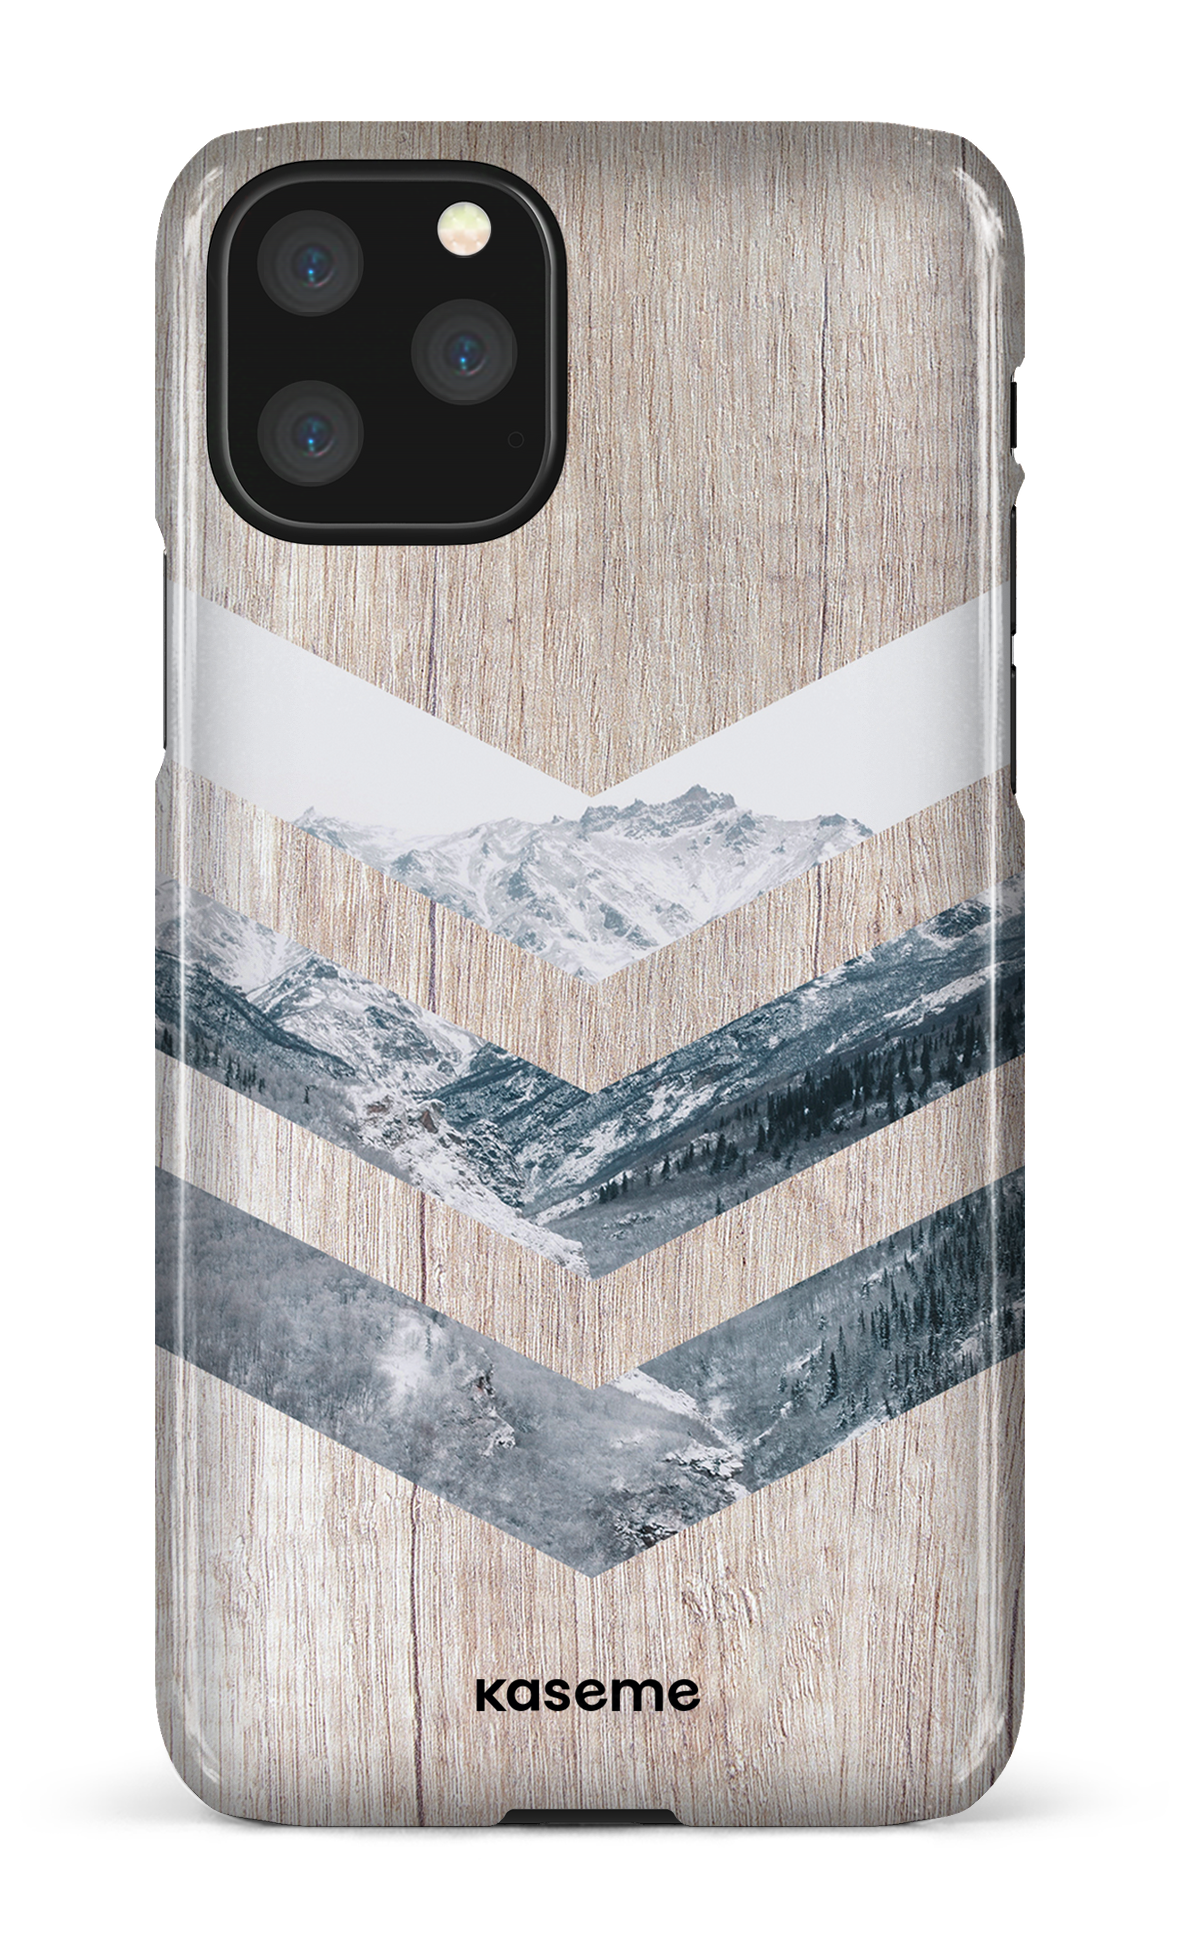 Alps - iPhone 11 Pro